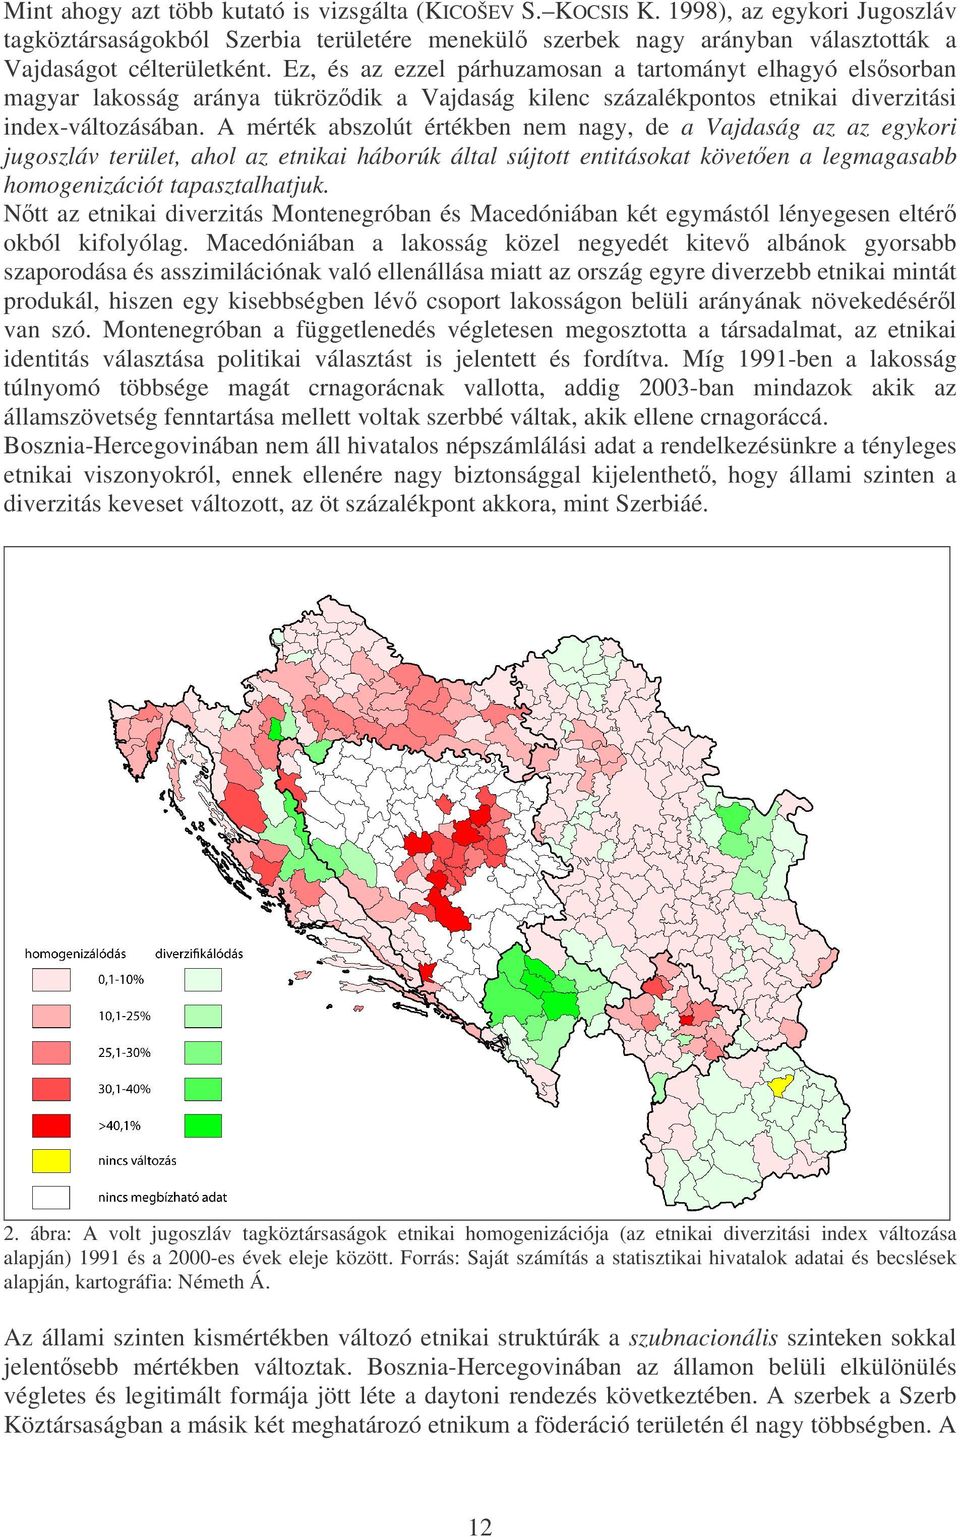 A mérték abszolút értékben nem nagy, de a Vajdaság az az egykori jugoszláv terület, ahol az etnikai háborúk által sújtott entitásokat követen a legmagasabb homogenizációt tapasztalhatjuk.